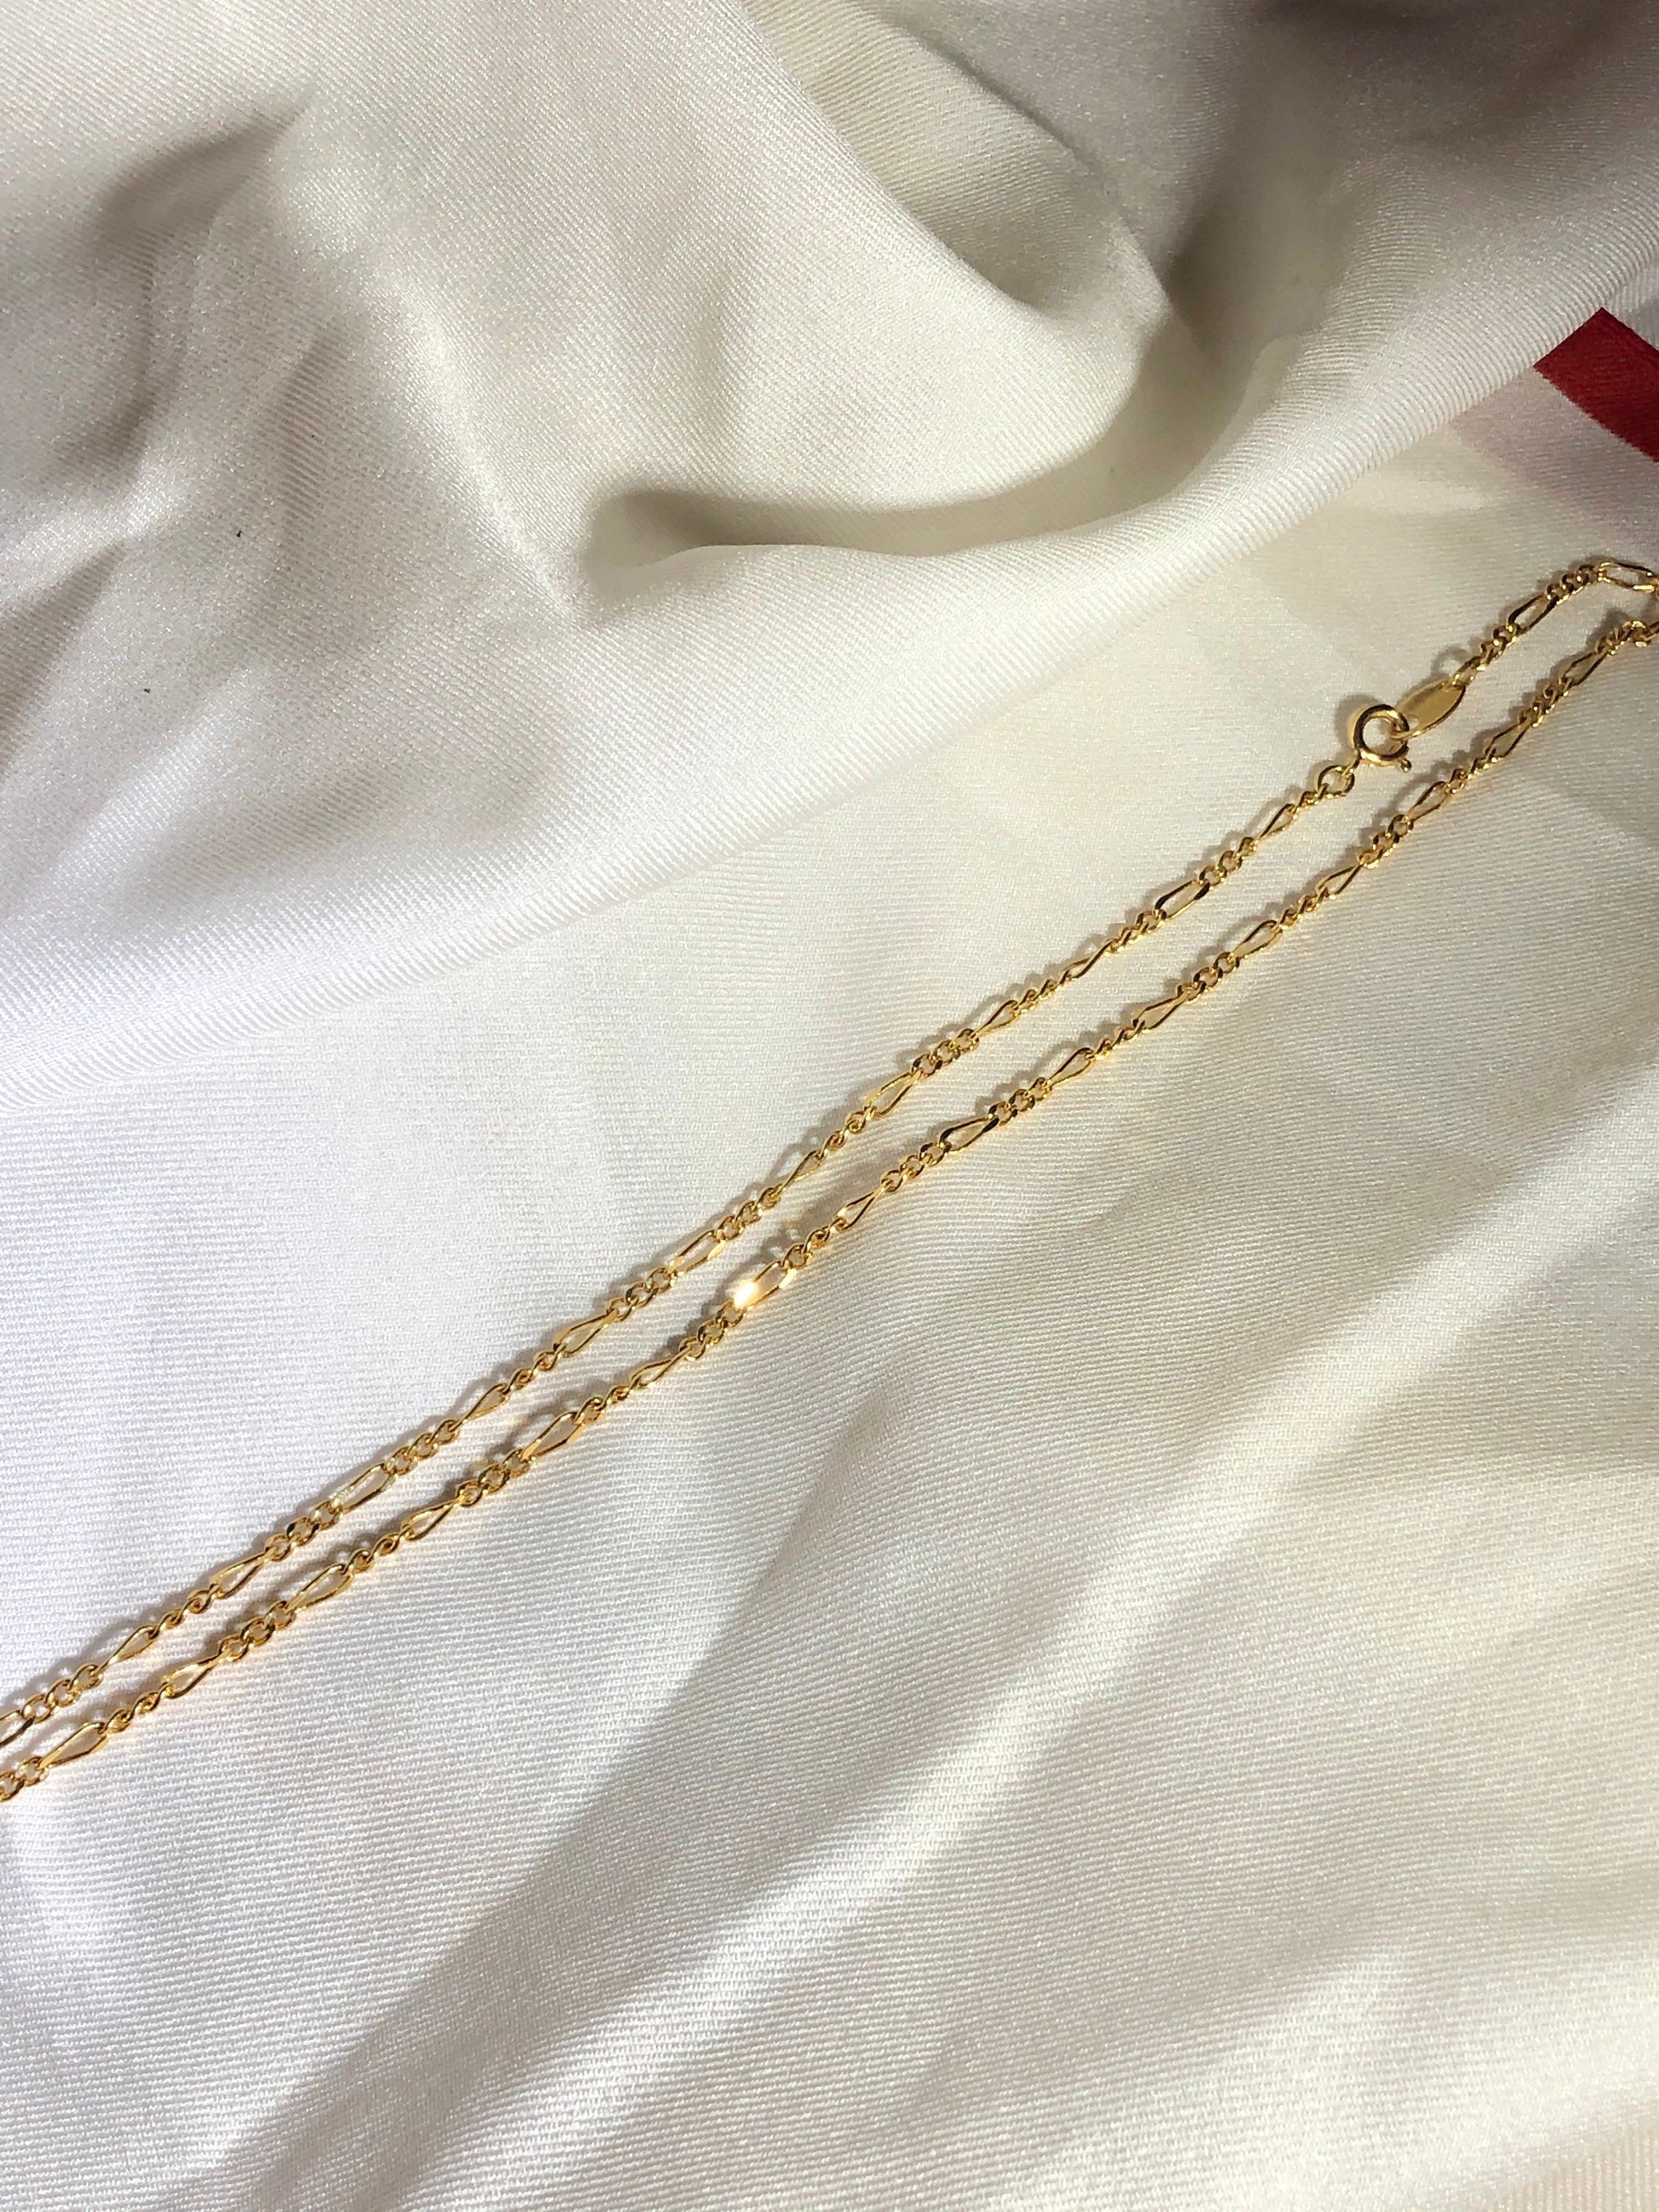 Avon Circle Purple Intaglio Glass Cameo Gold Pendant Necklace